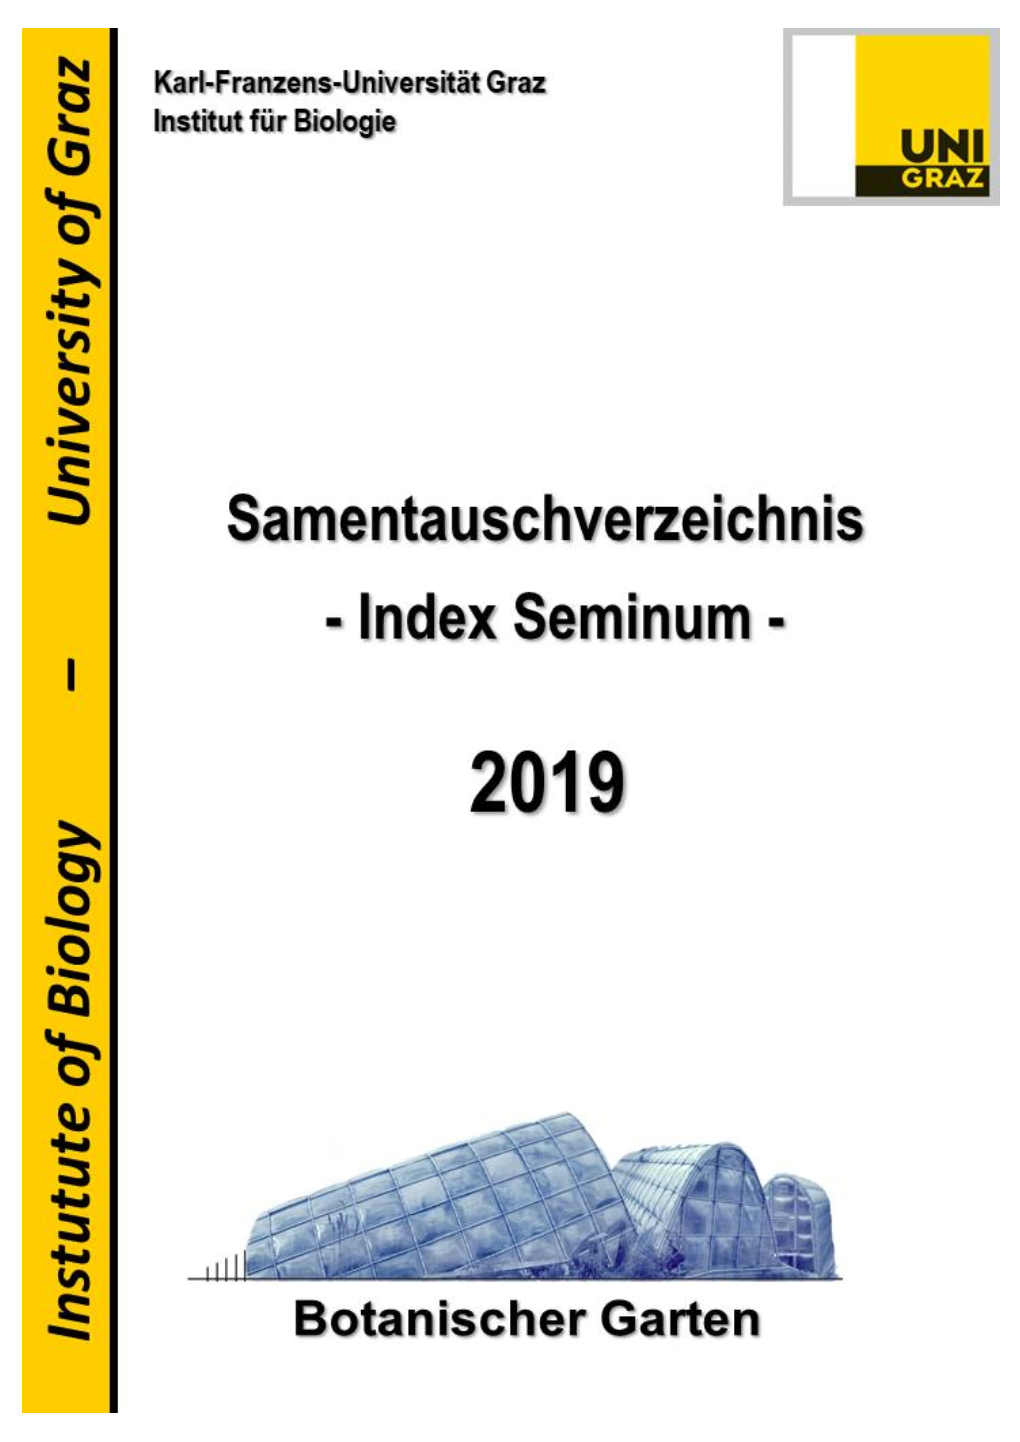 Samenkatalog Graz 2019 End.Pdf